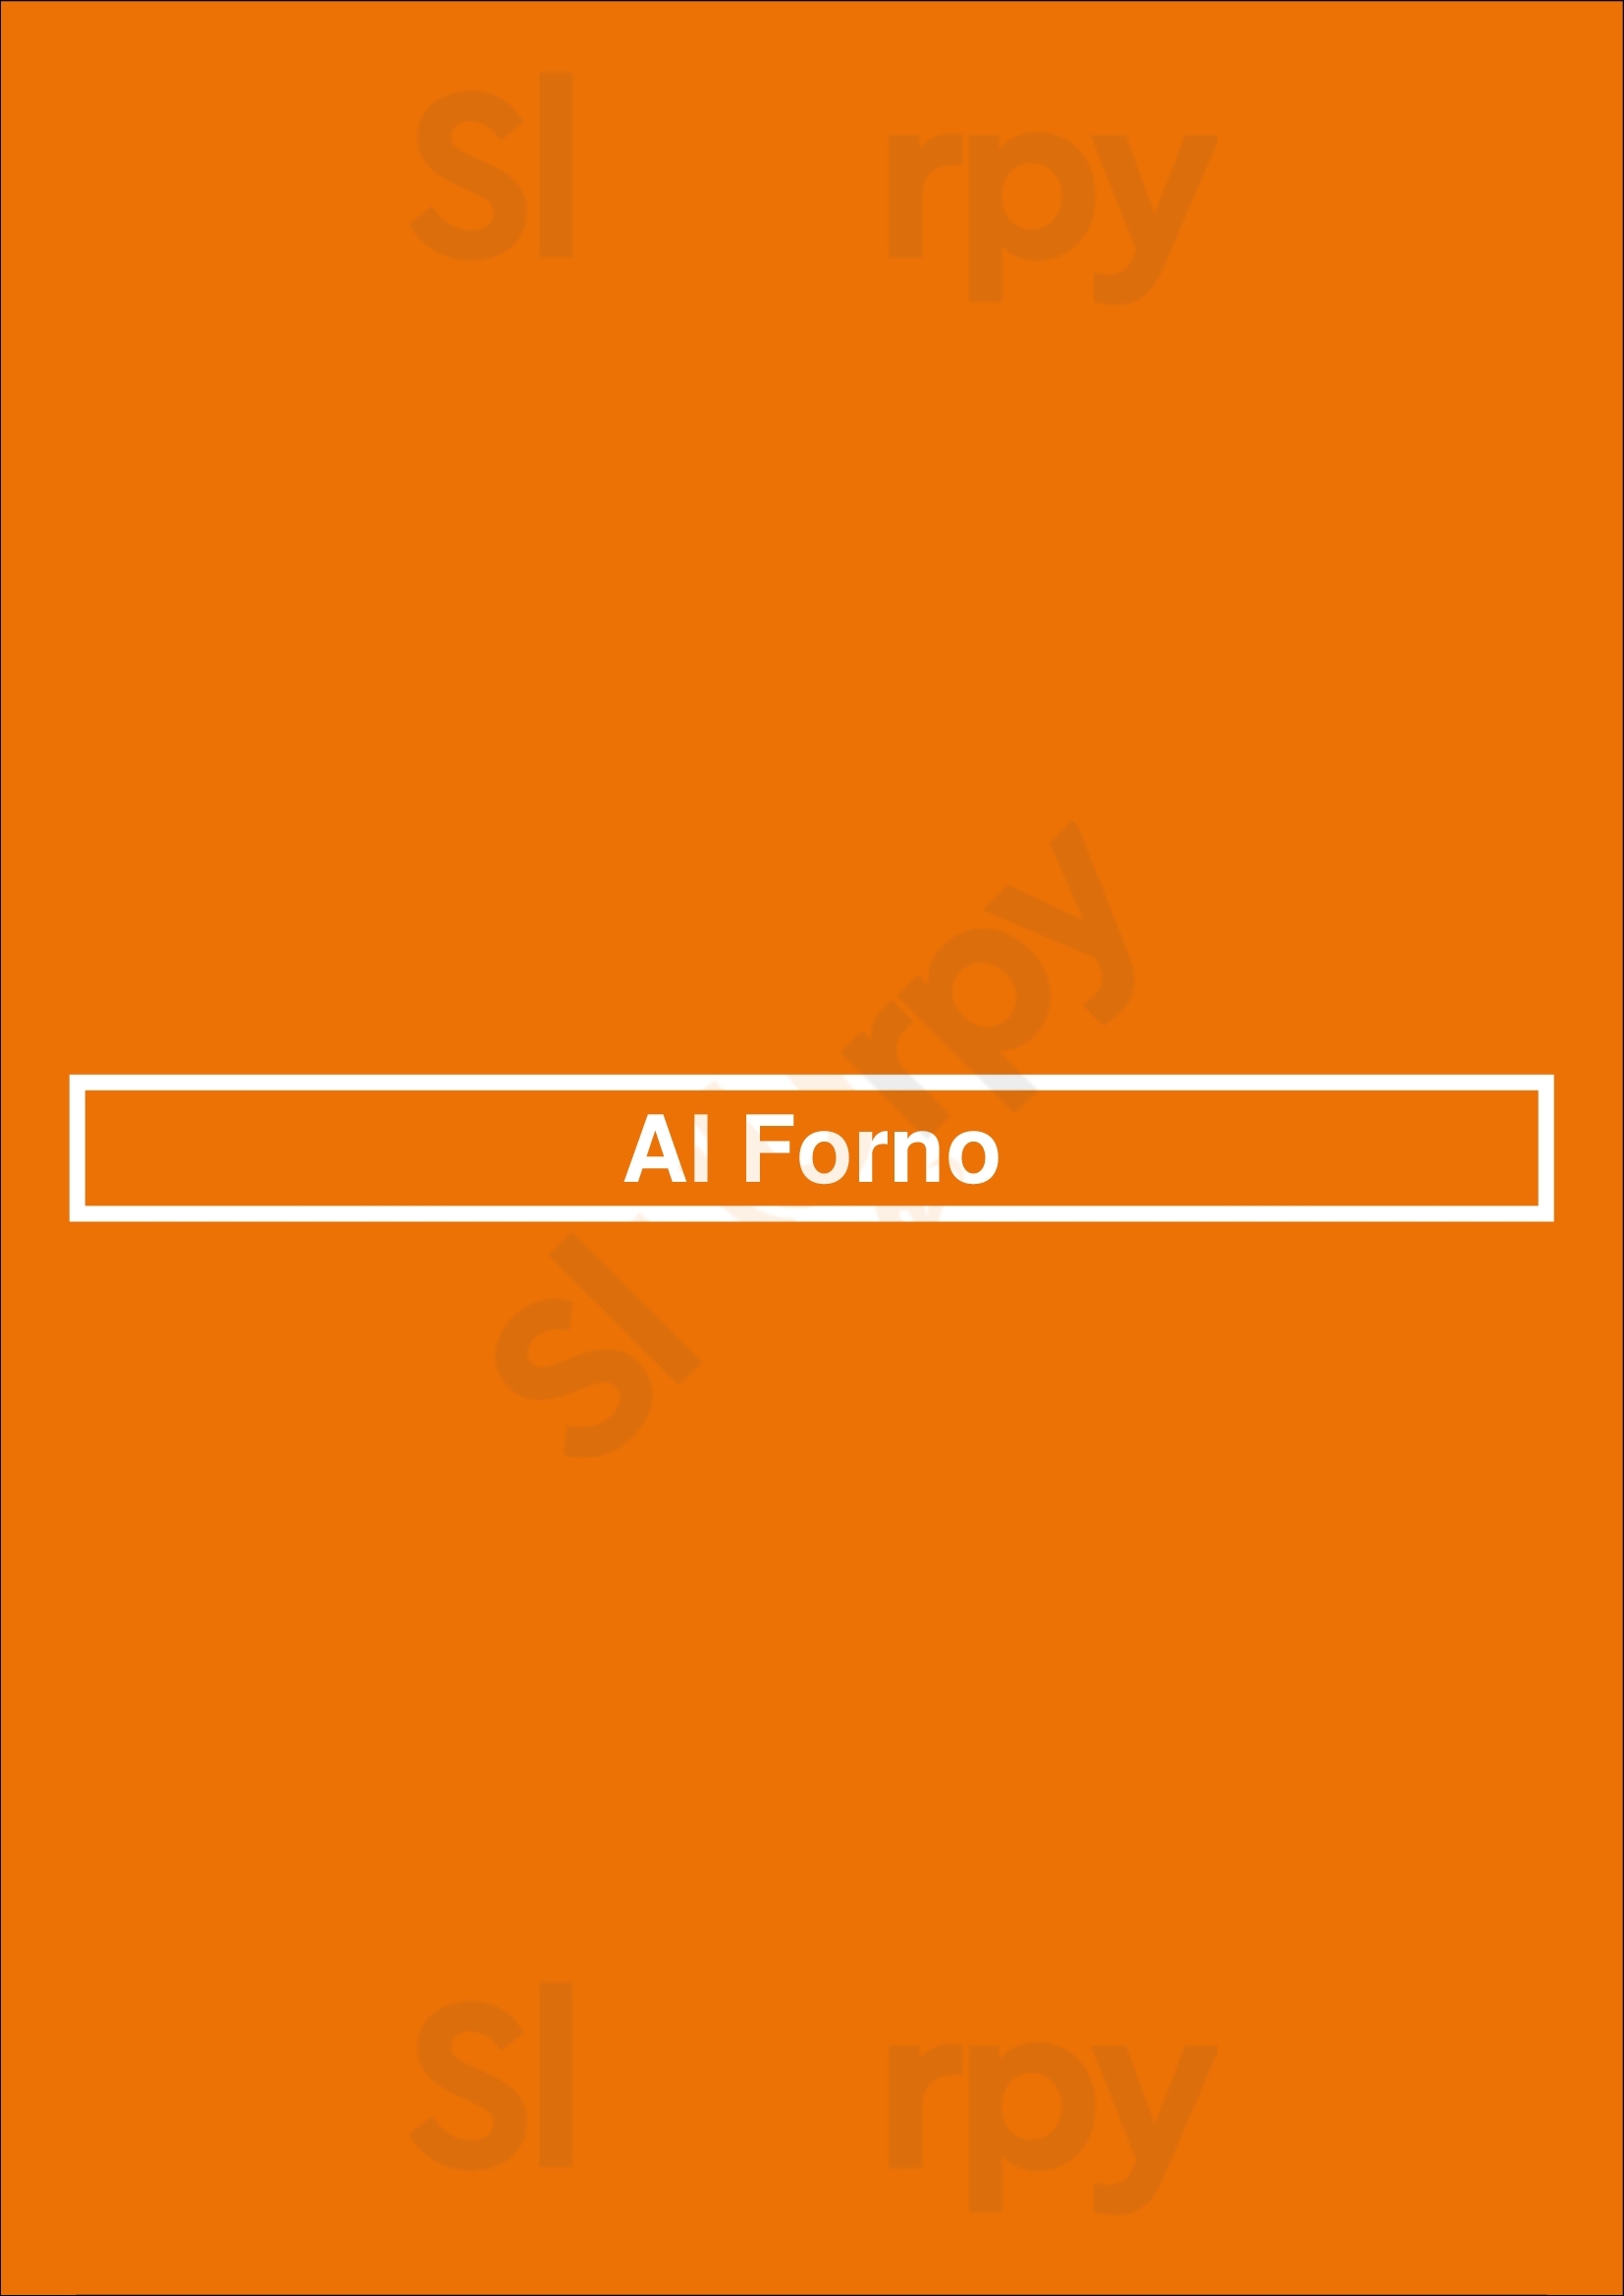 Al Forno Lisboa Menu - 1